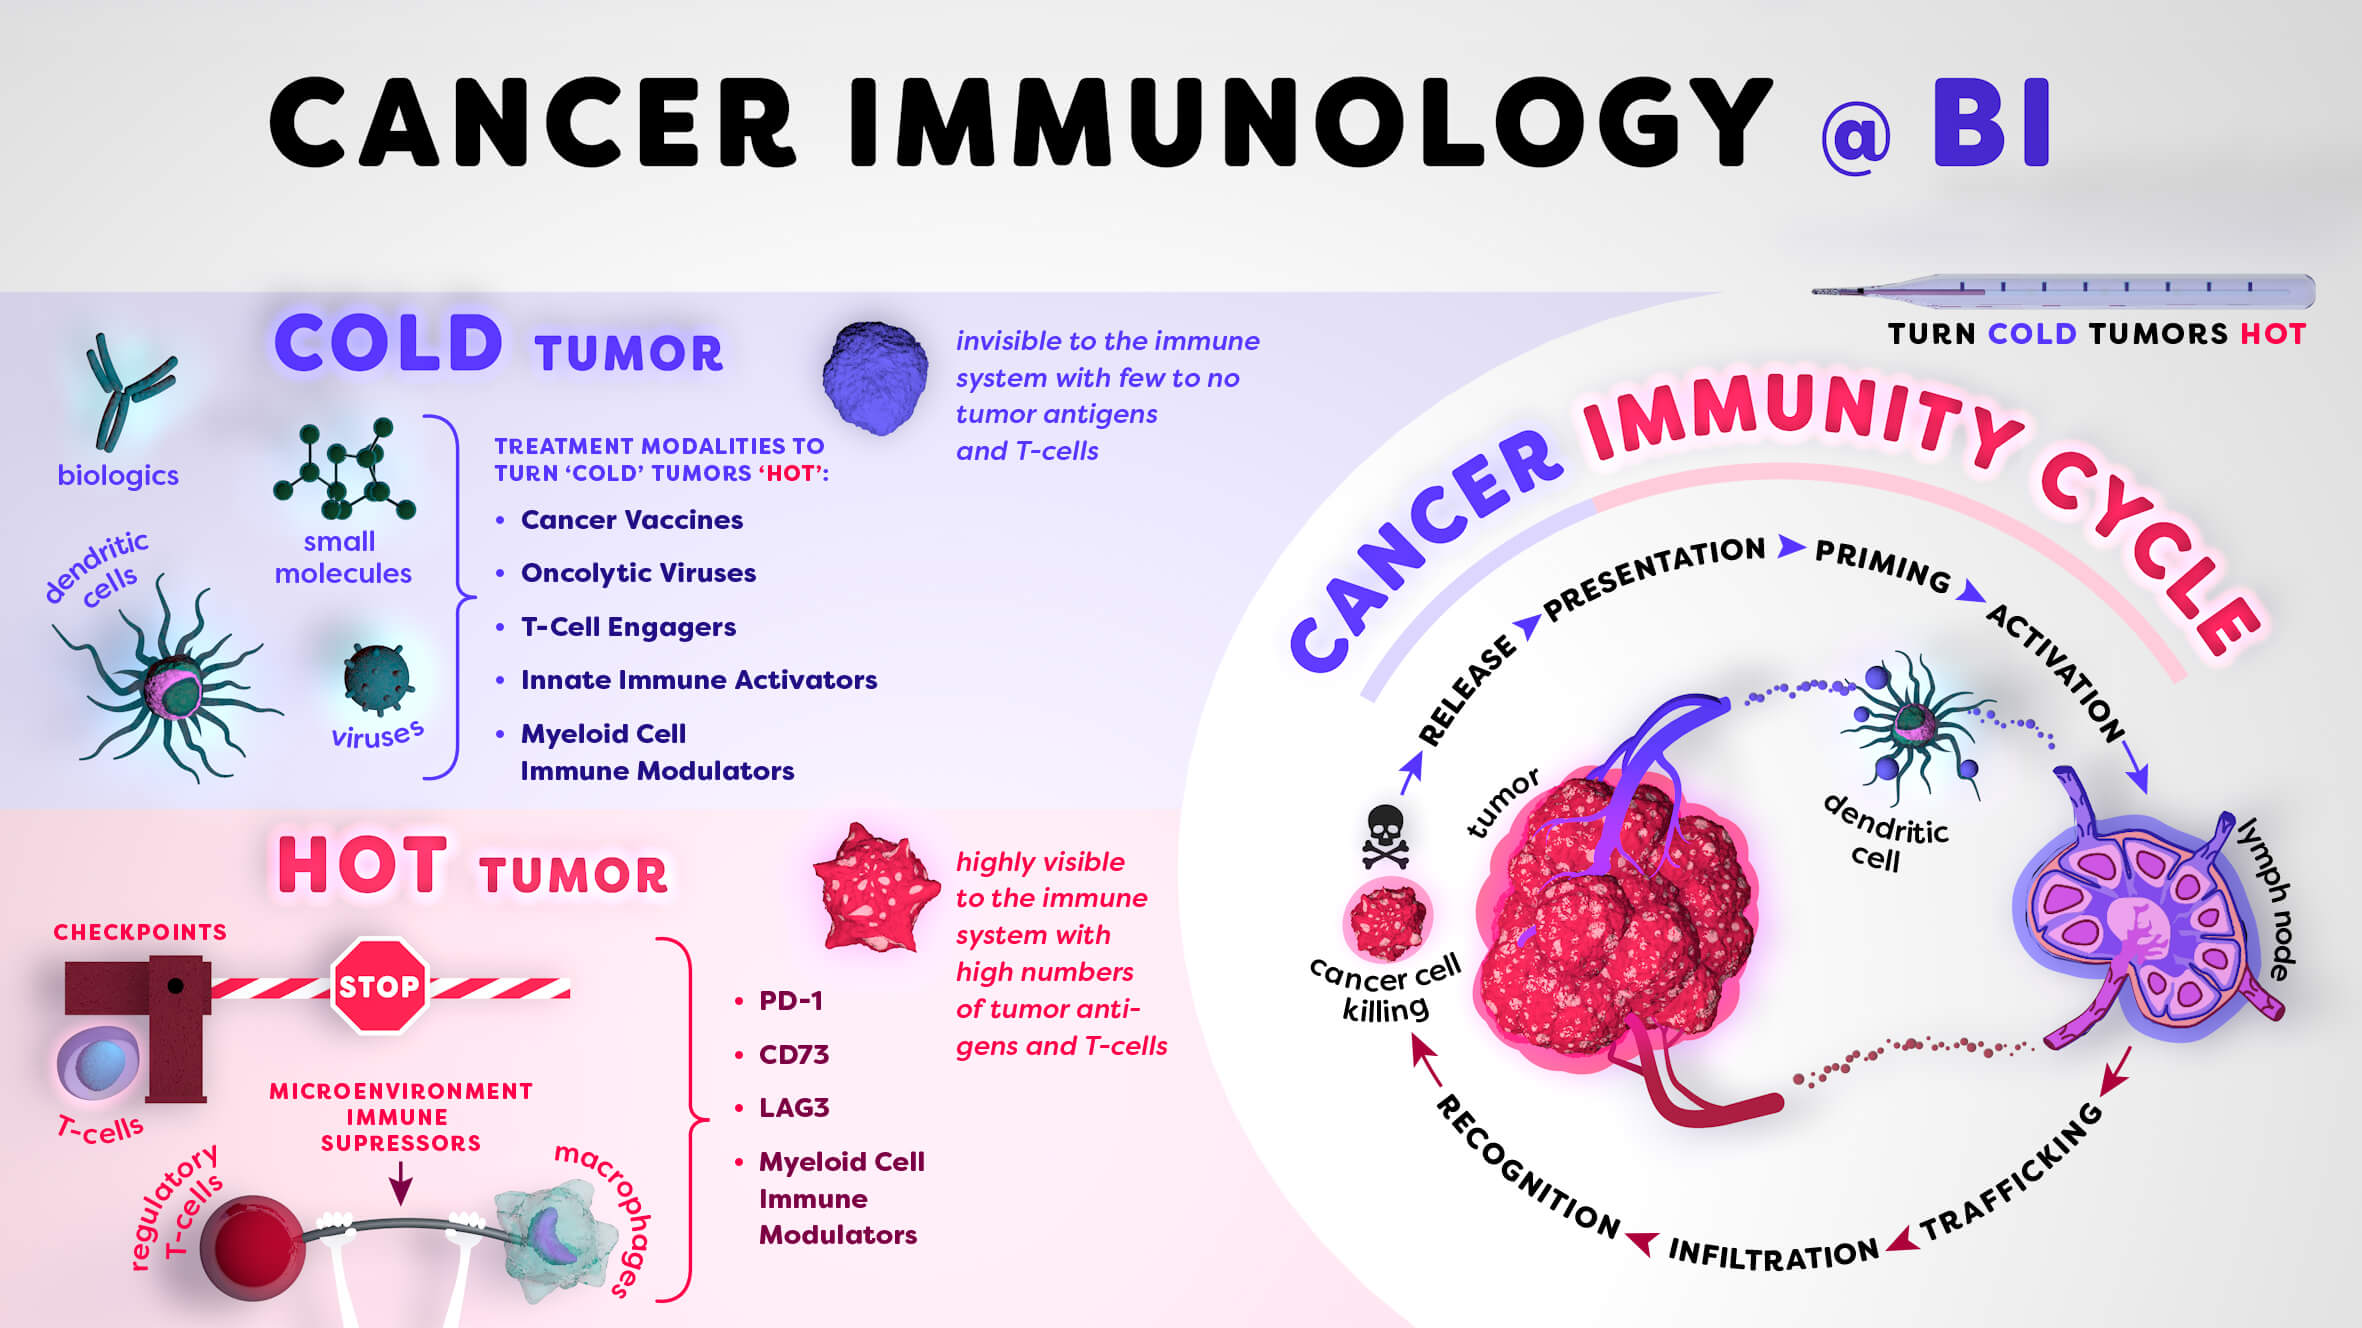 Infographic / Cancer Immunology @ Boehringer Ingelheim © Daniela Leitner